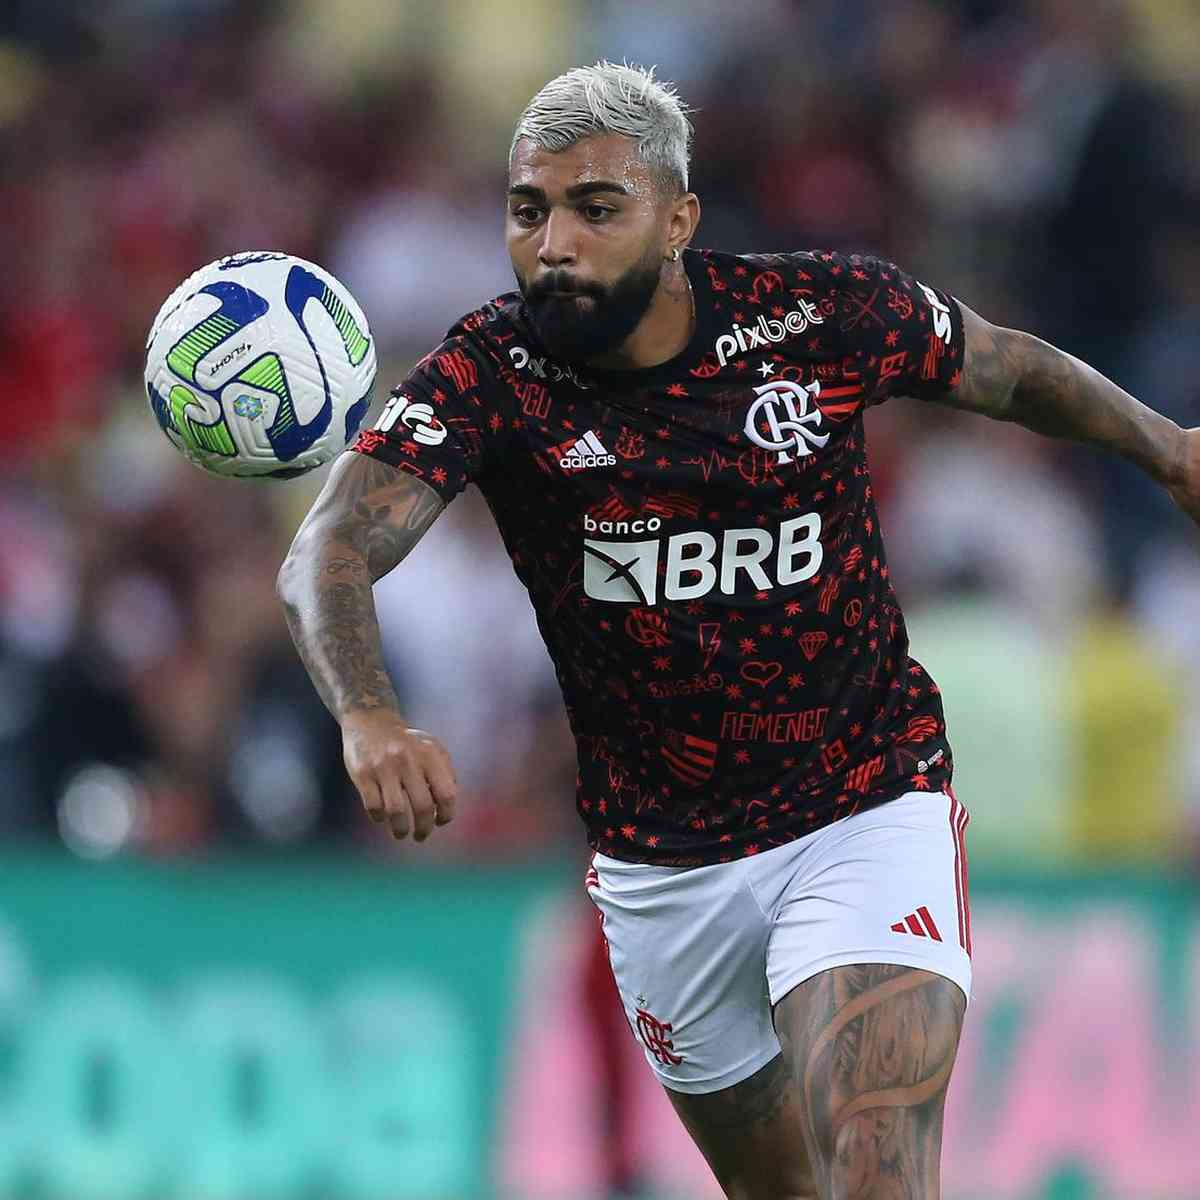 Flamengo terá desfalque de peso para jogo contra o Red Bull Bragantino -  Superesportes